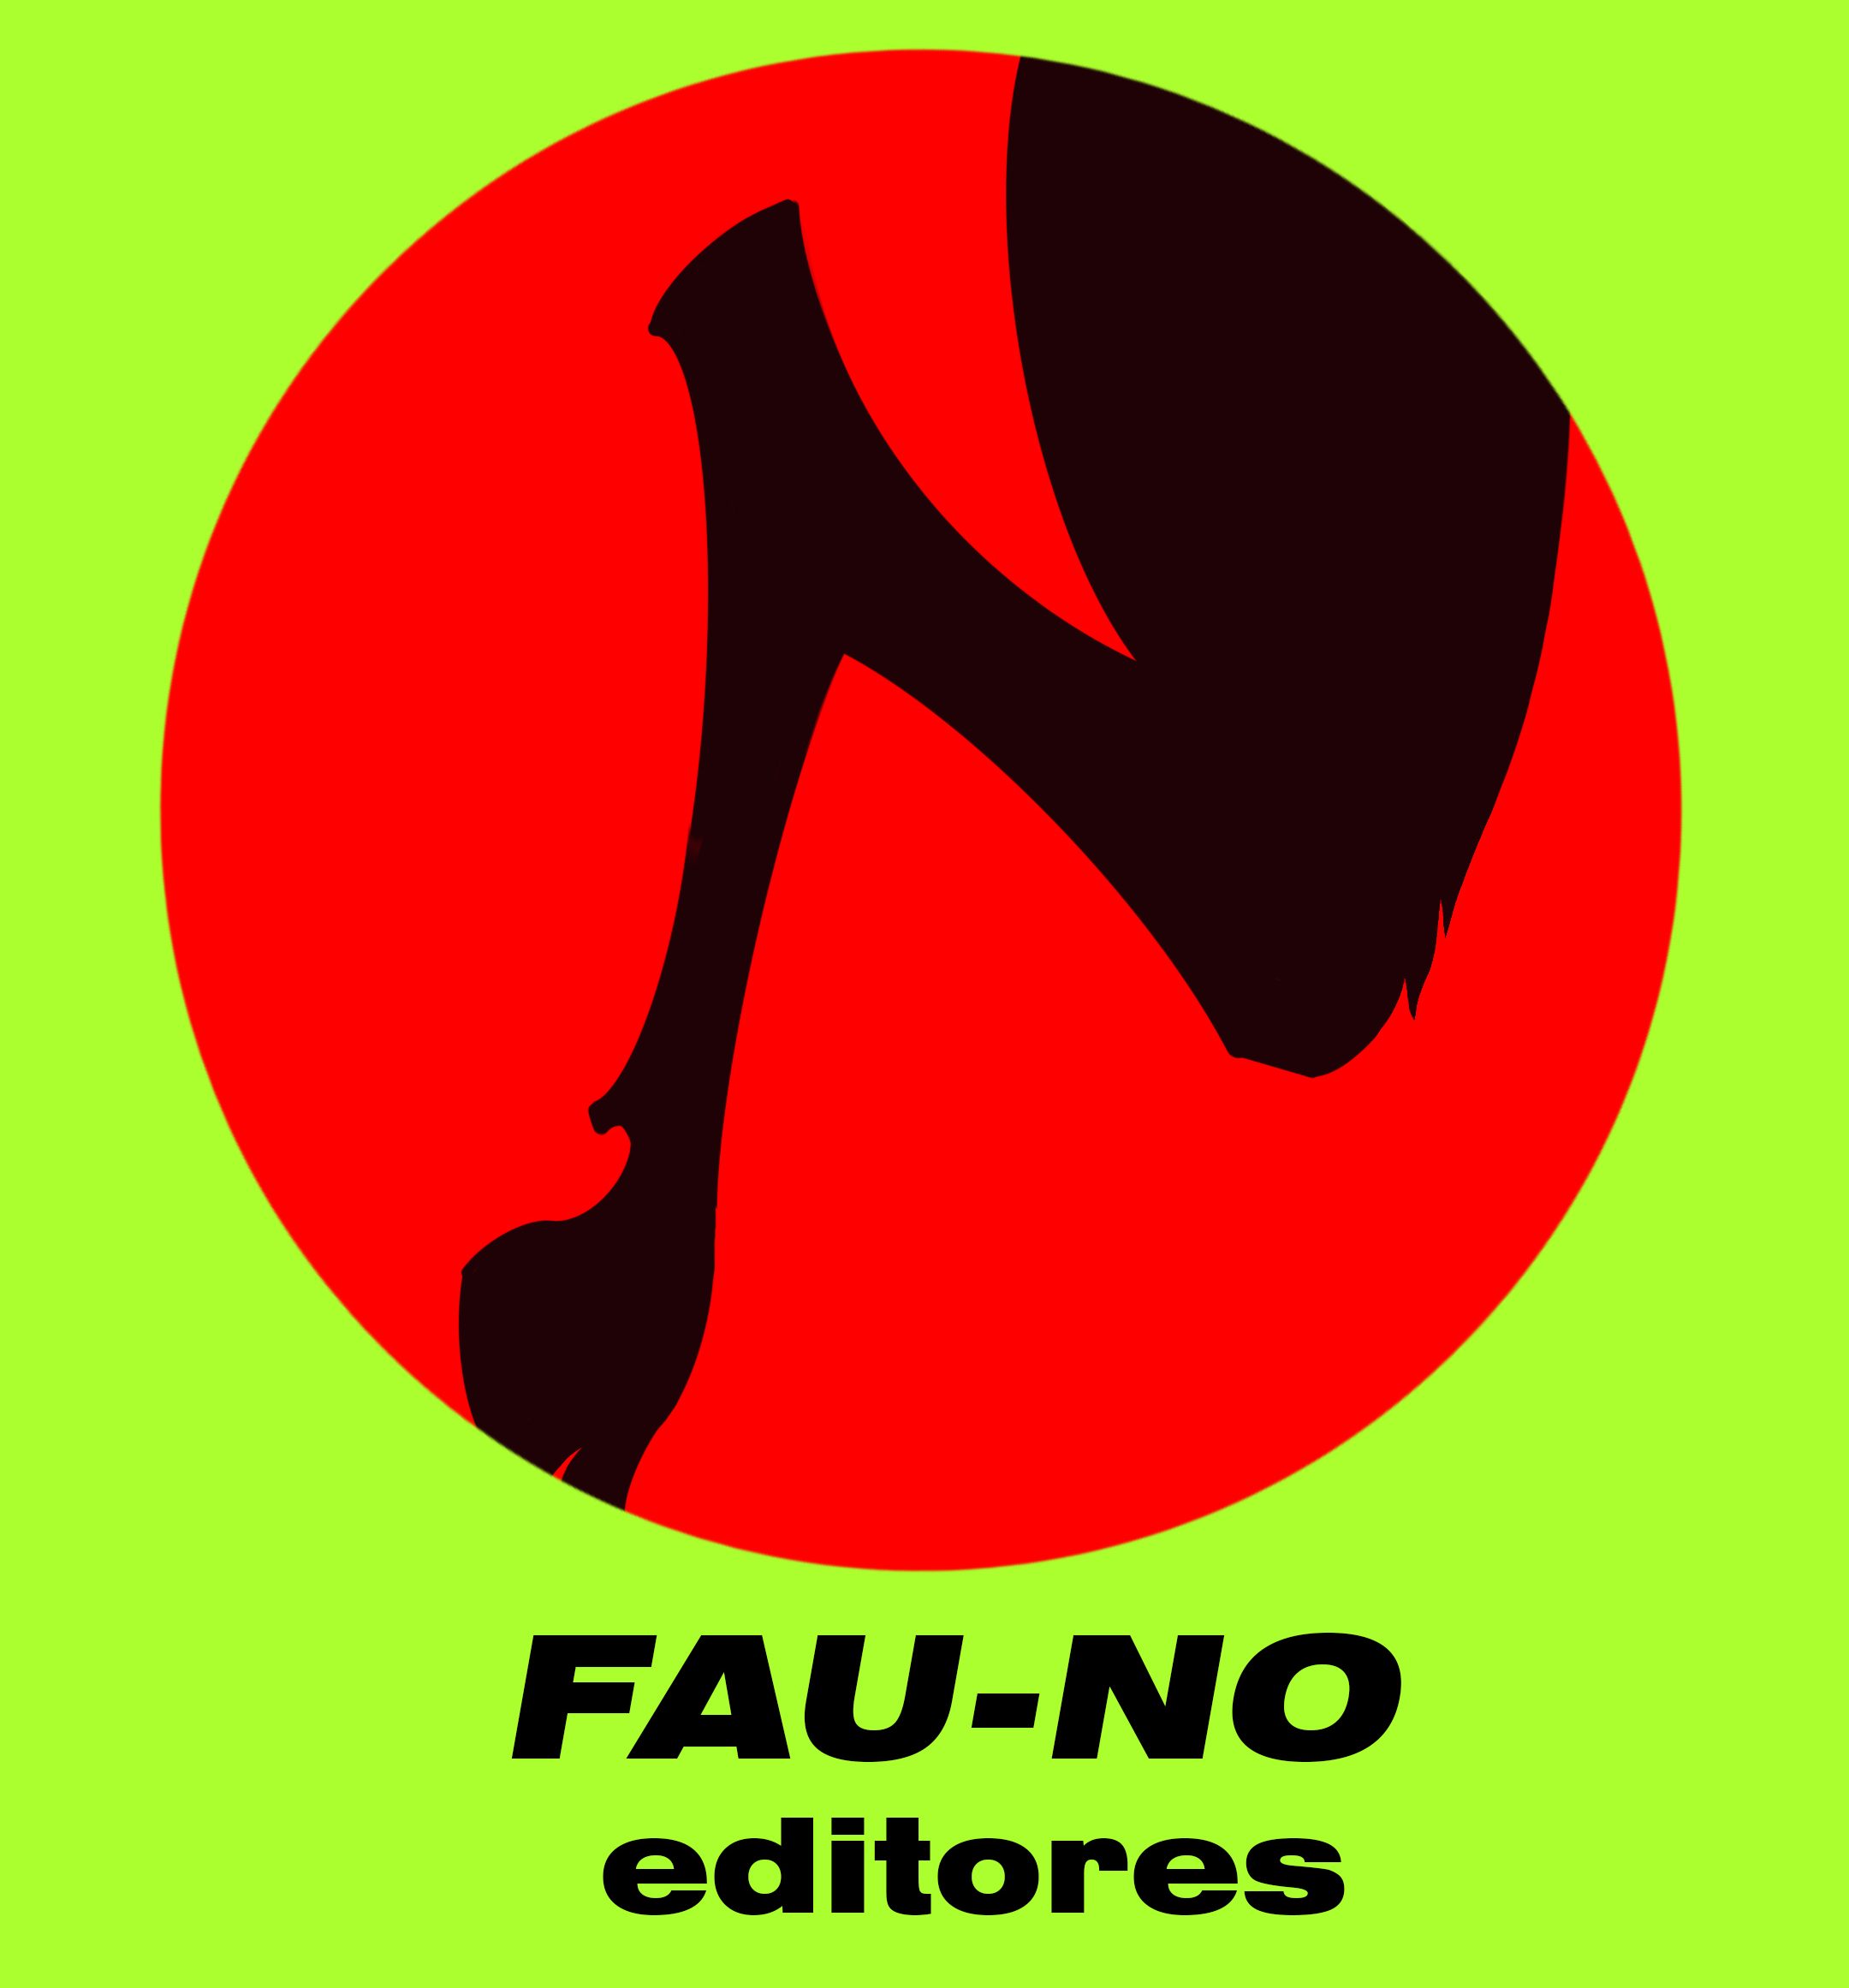 FAU-NO editores